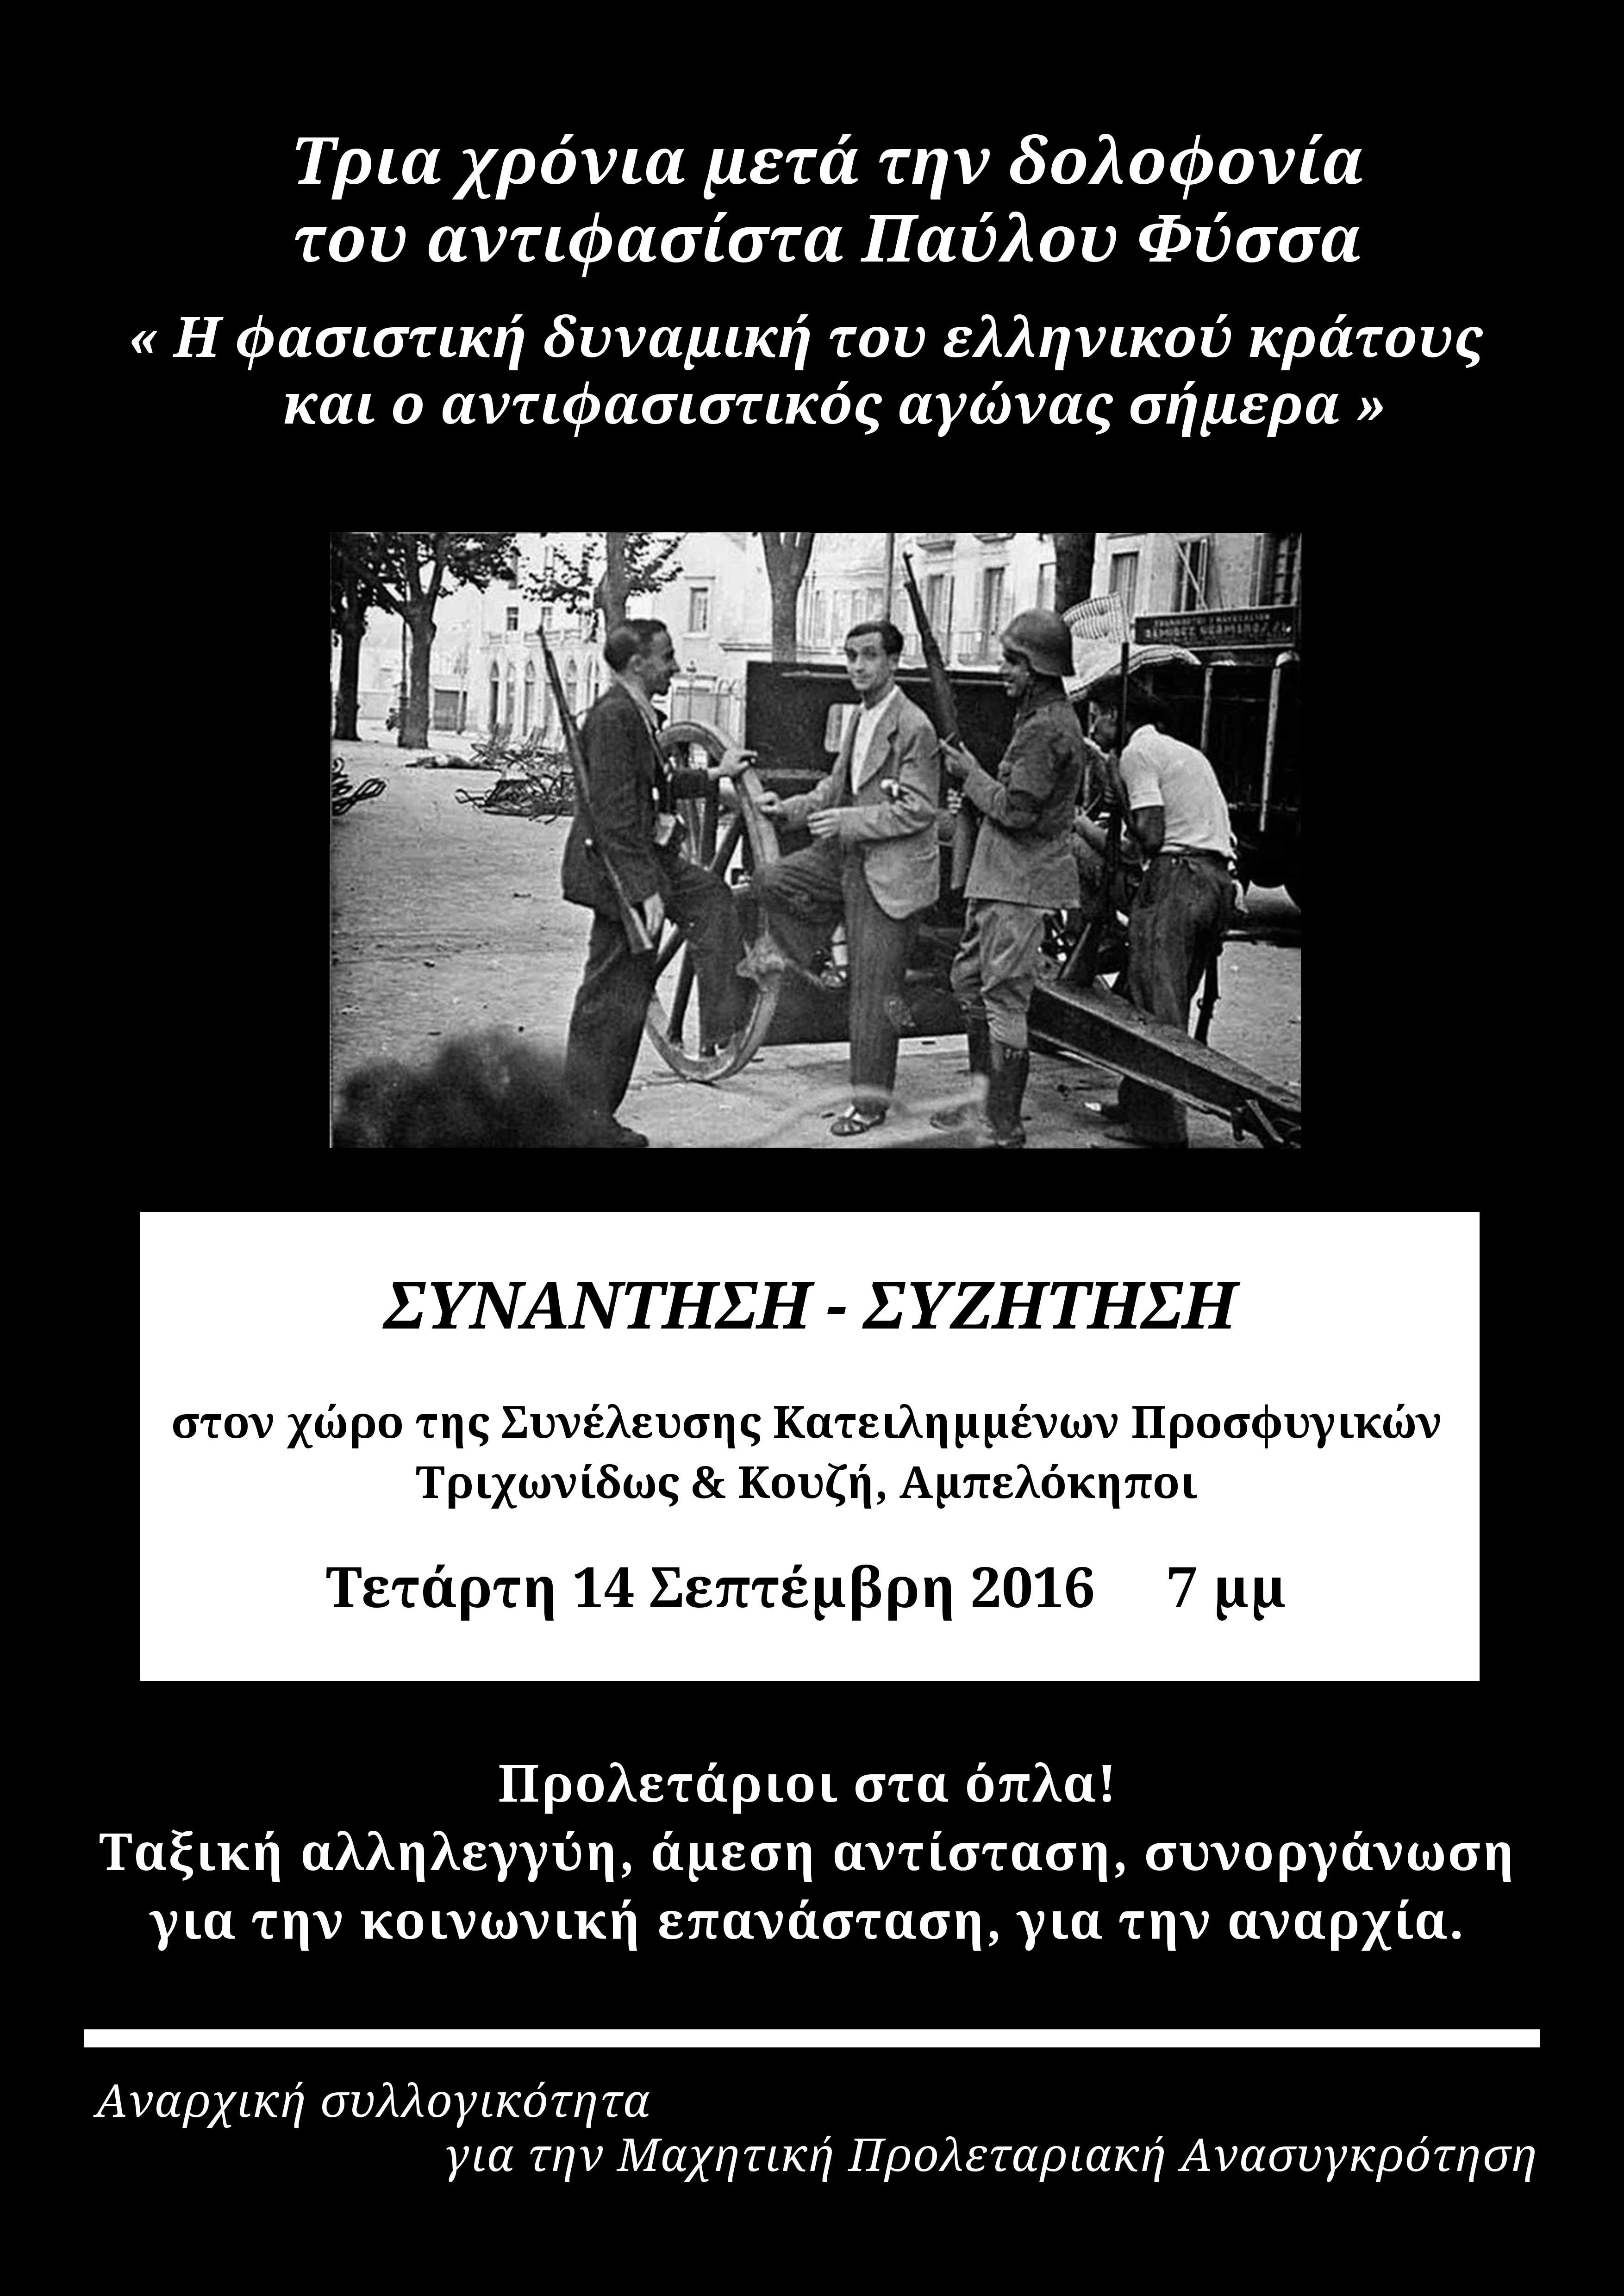 Αθήνα: Συνάντηση/συζήτηση για τον αντιφασιστικό αγώνα σήμερα [Τετάρτη 14/09]